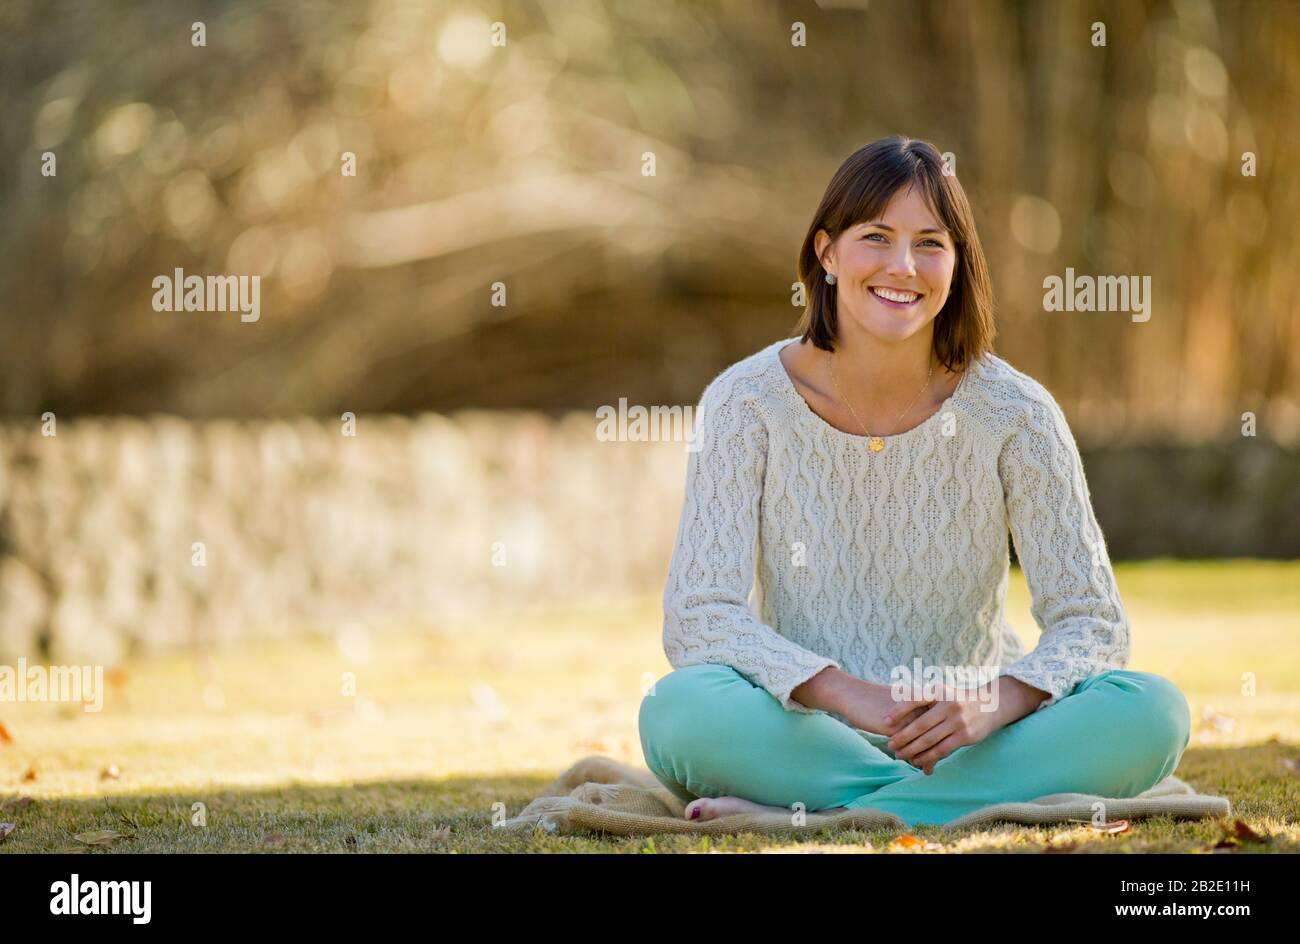 Porträt einer lächelnden jungen Frau, die sich auf einer Decke in einem sonnenen Park entspannen kann Stockfoto